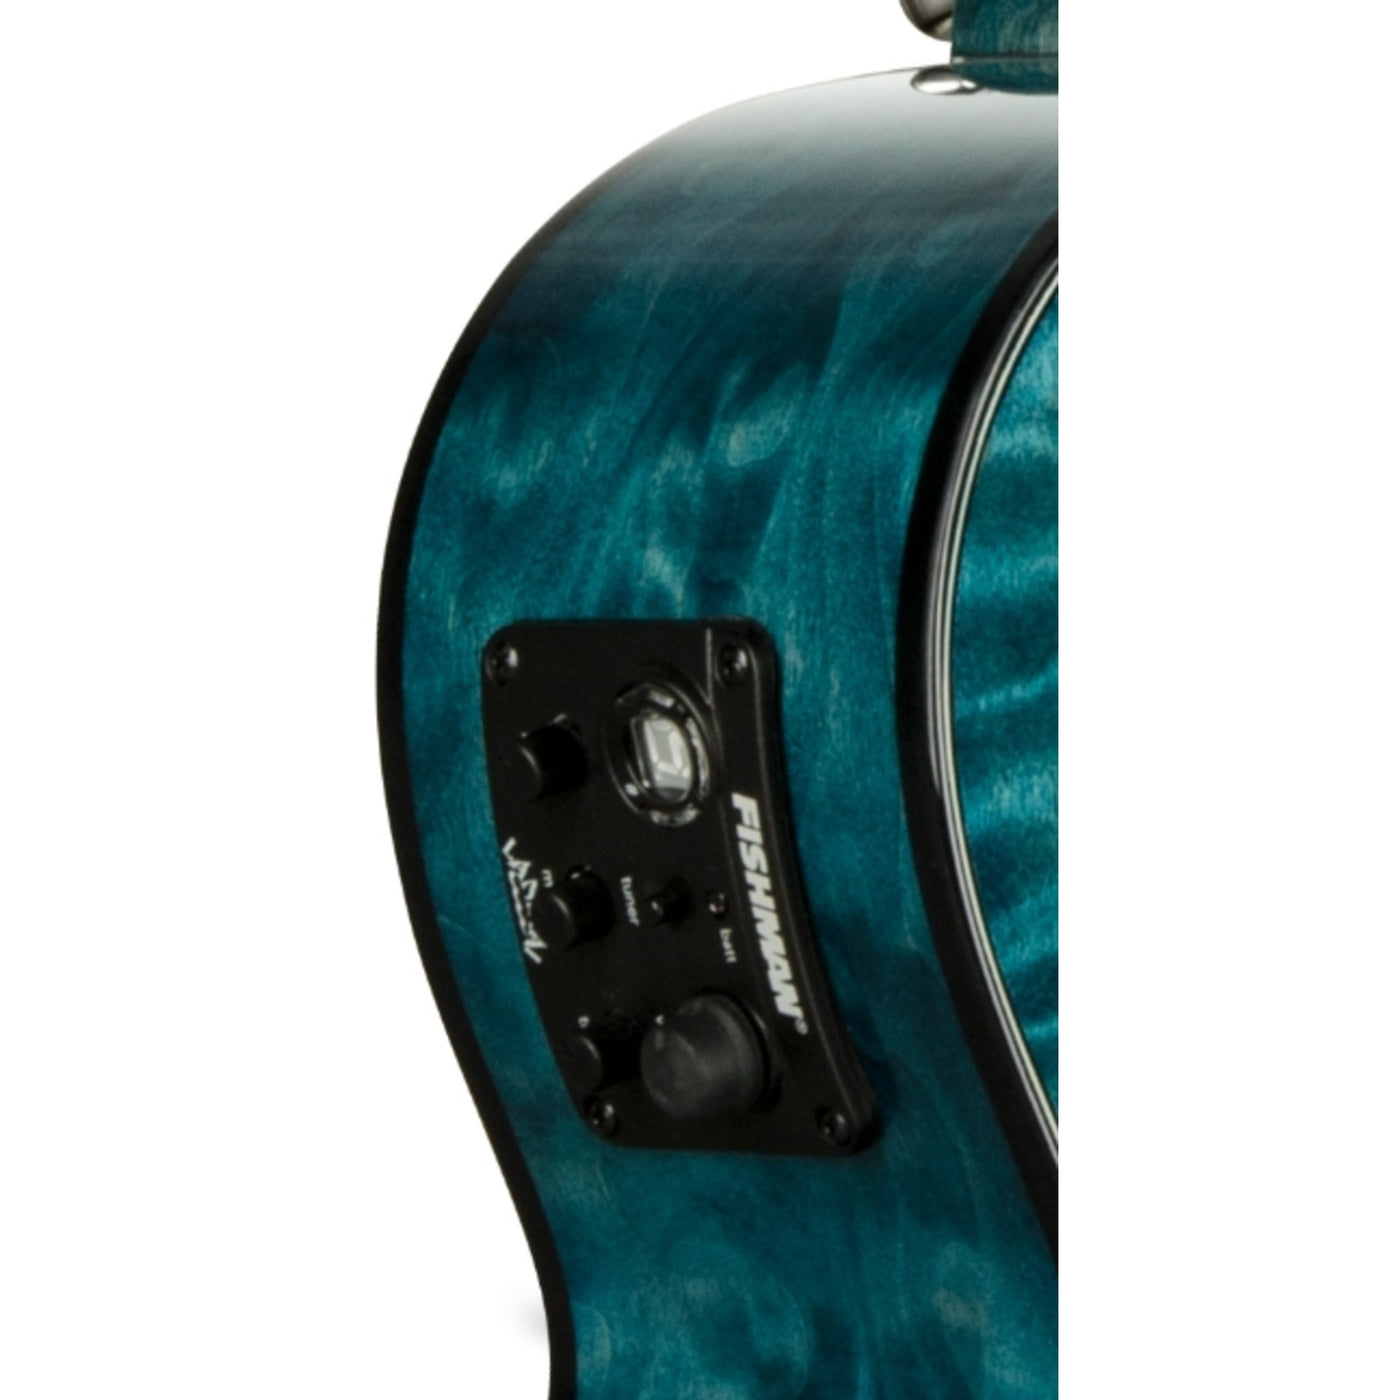 Lanikai QM-BLCET 4 String Ukulele, Tenor Quilted Maple Ukulele with Cutaway and Fishman Kula Electronics , Blue Stain